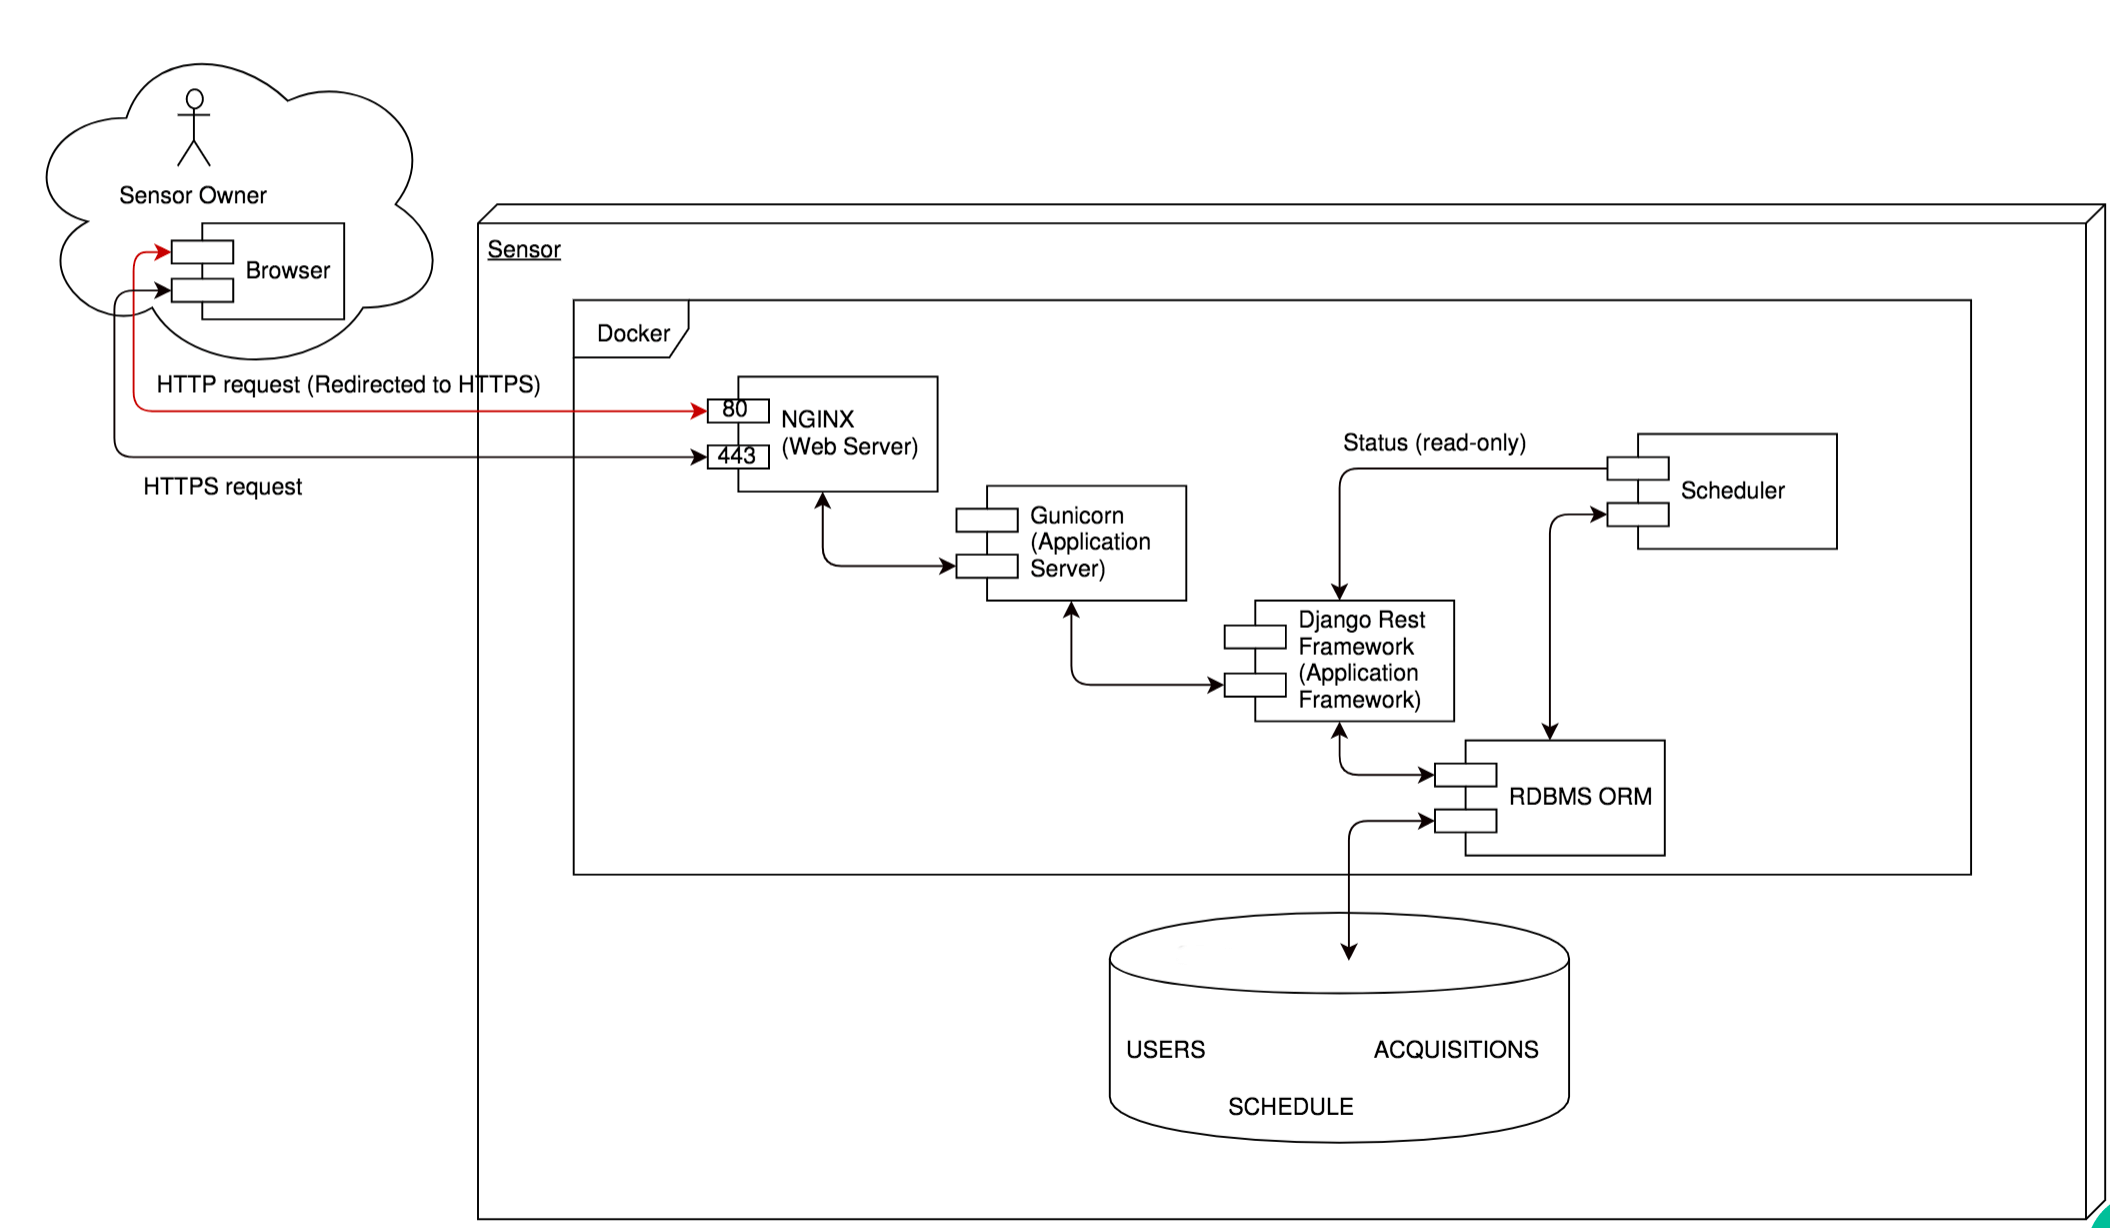 SCOS Sensor Architecture Diagram